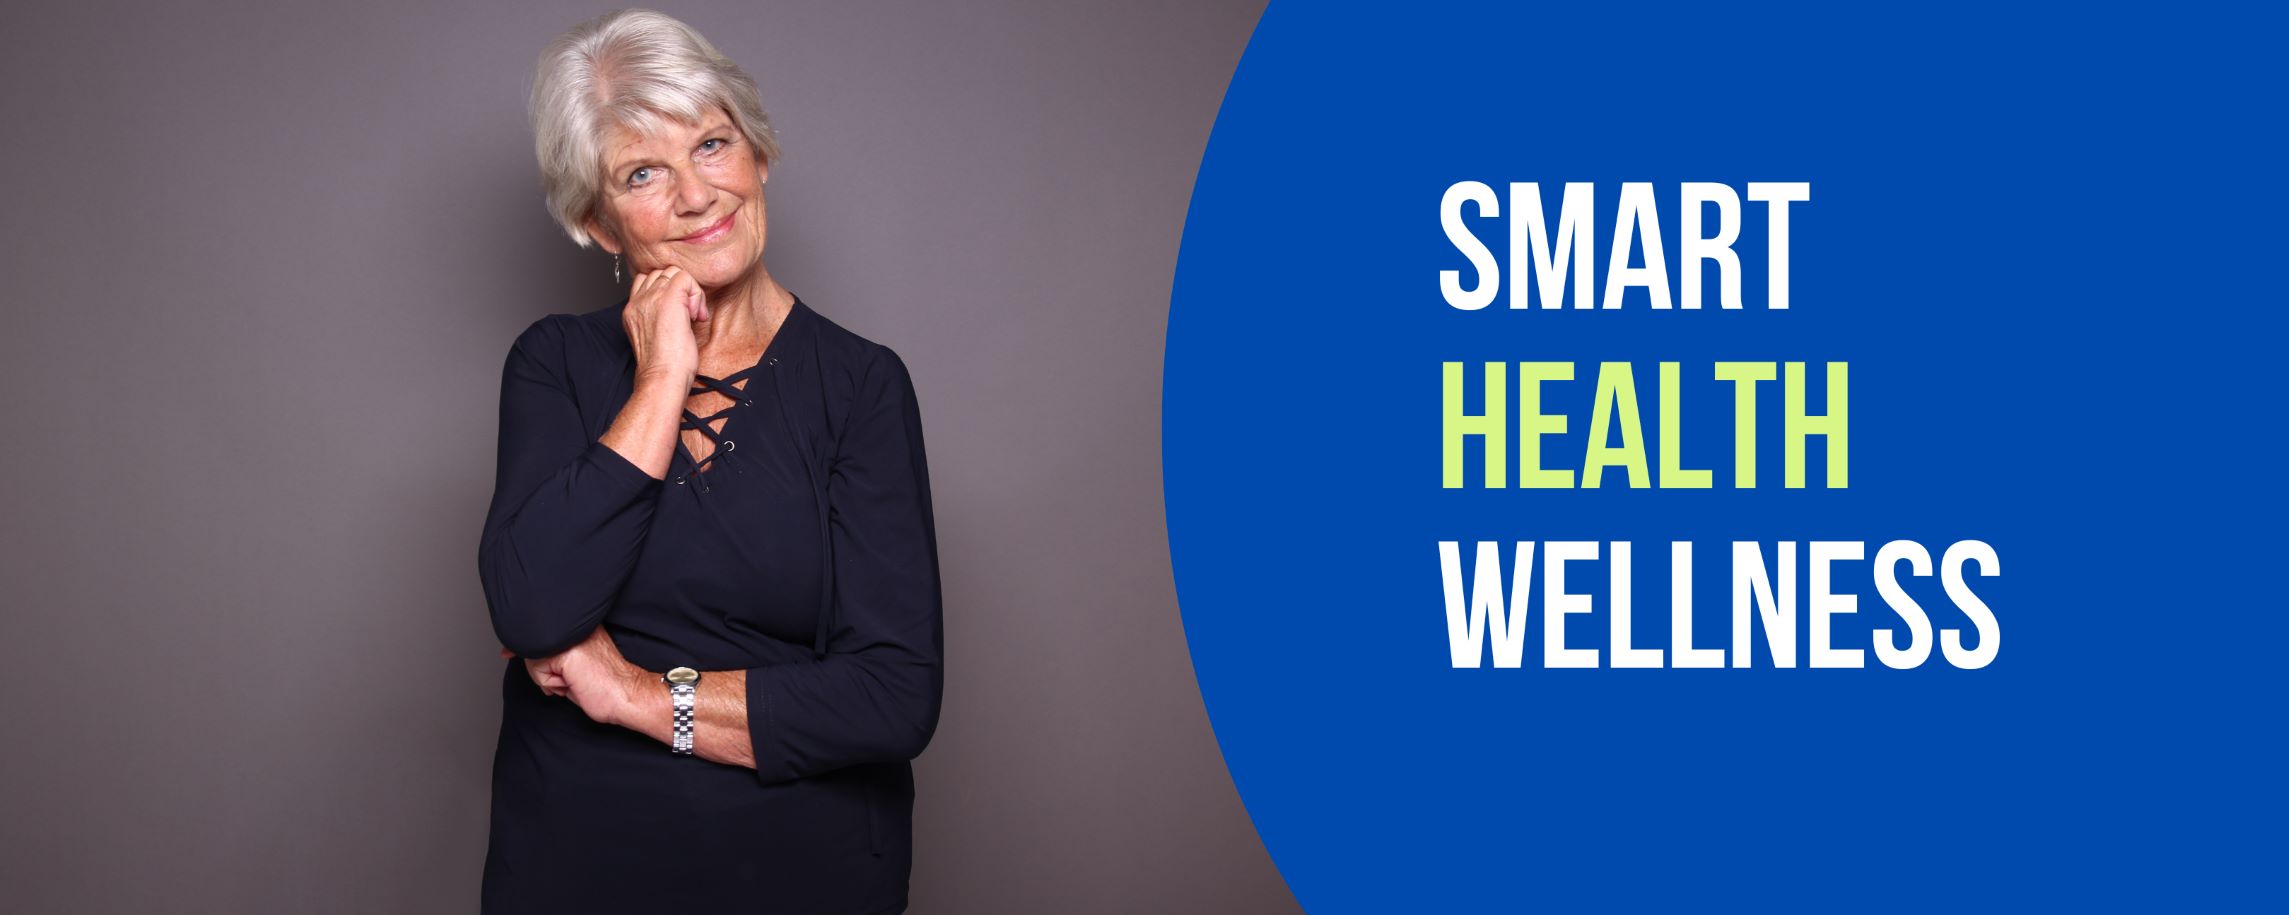 ตรวจสุขภาพสำหรับสุภาพสตรีอายุ 50 ปีขึ้นไป Smart Health Wellness Female